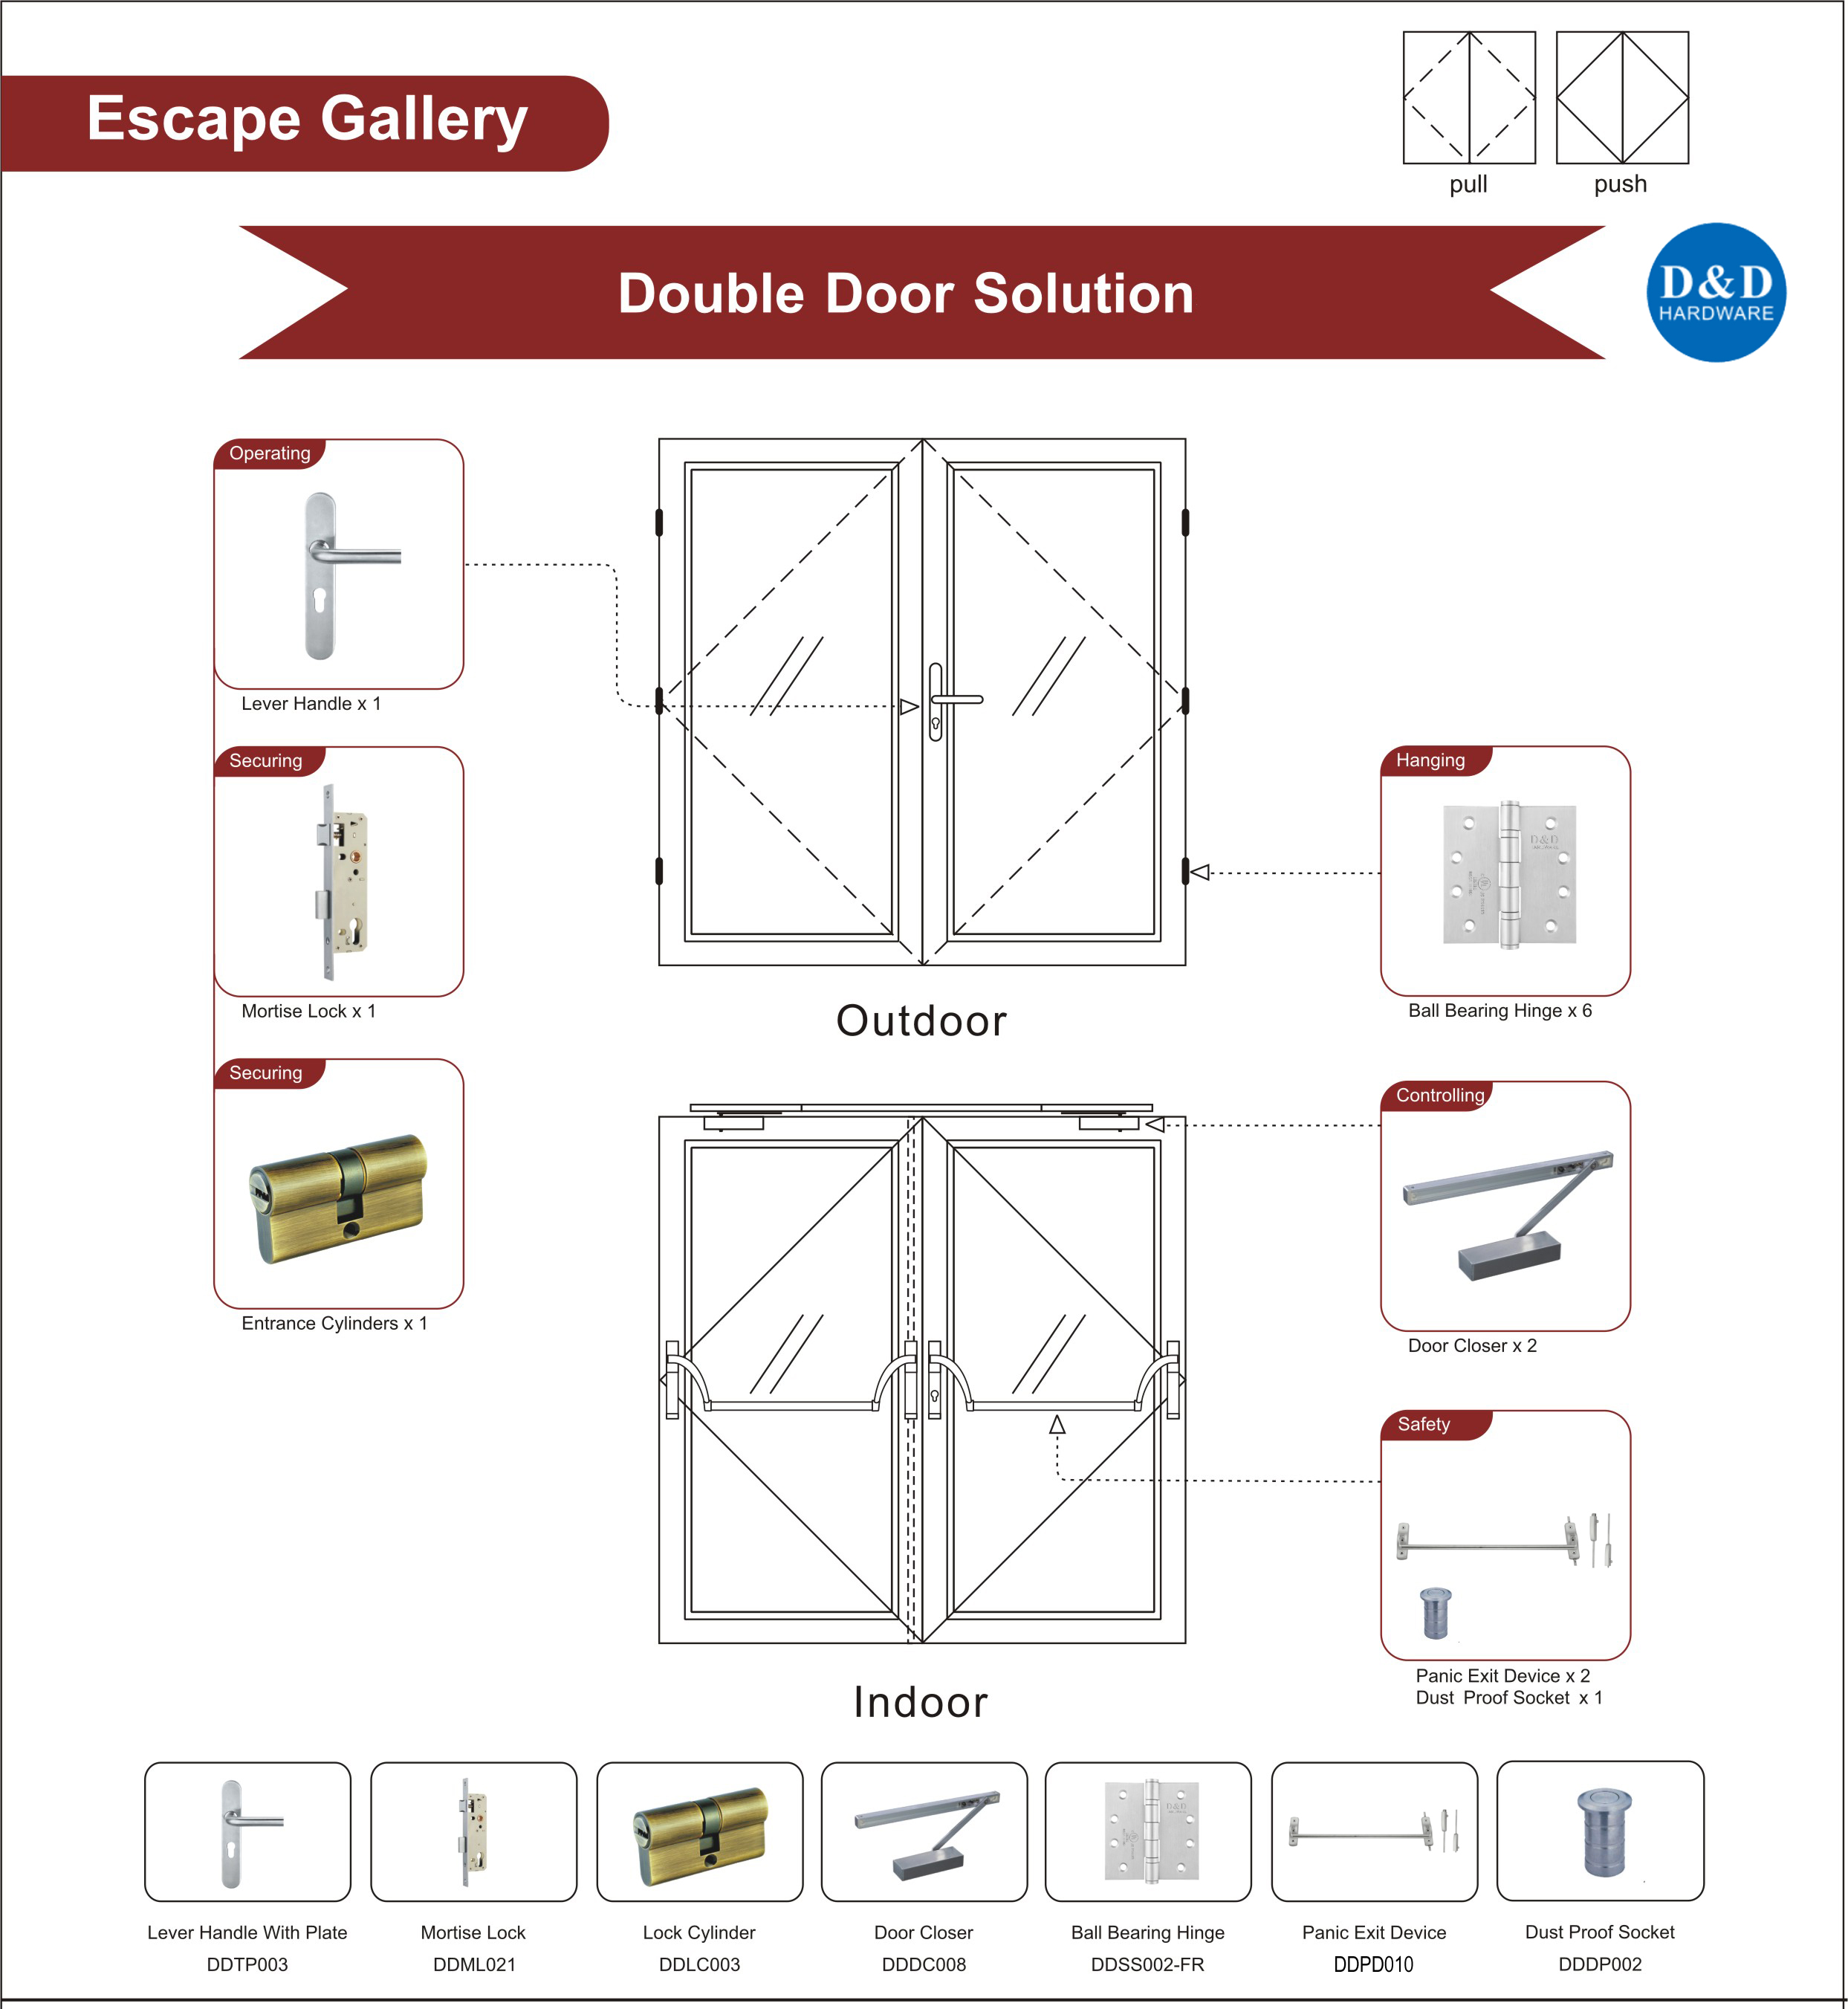 Steel Fire Rated Glass Door Ironmongery for Escape Gallery Double Door